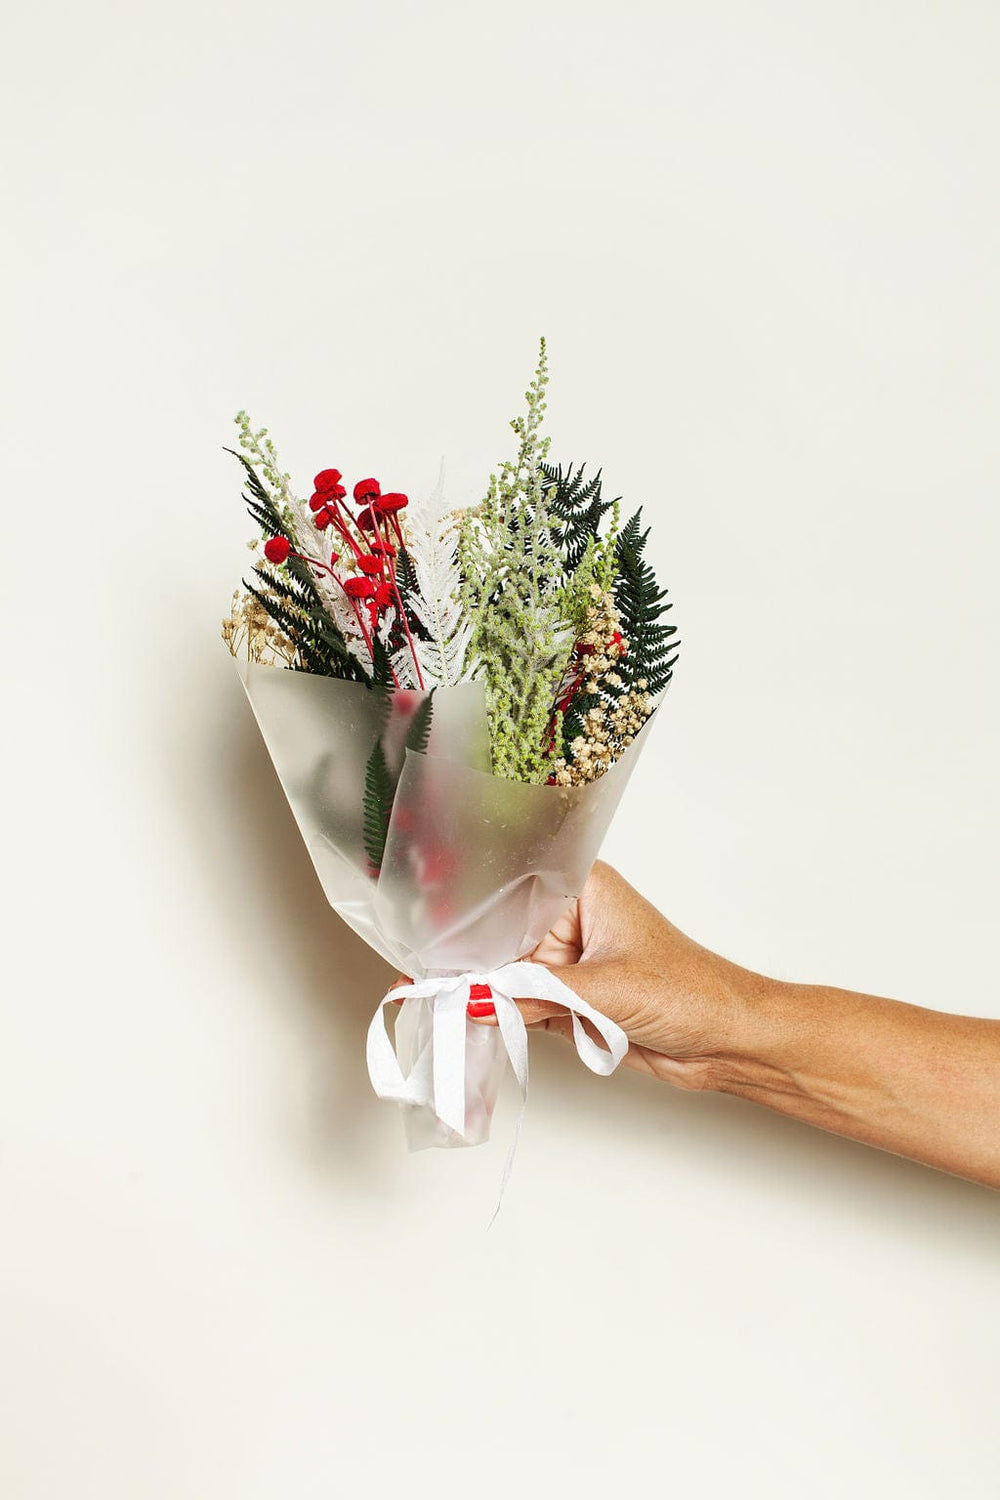 Brown Paper Wrap w/ Vase in Anaheim, CA | LV Florals